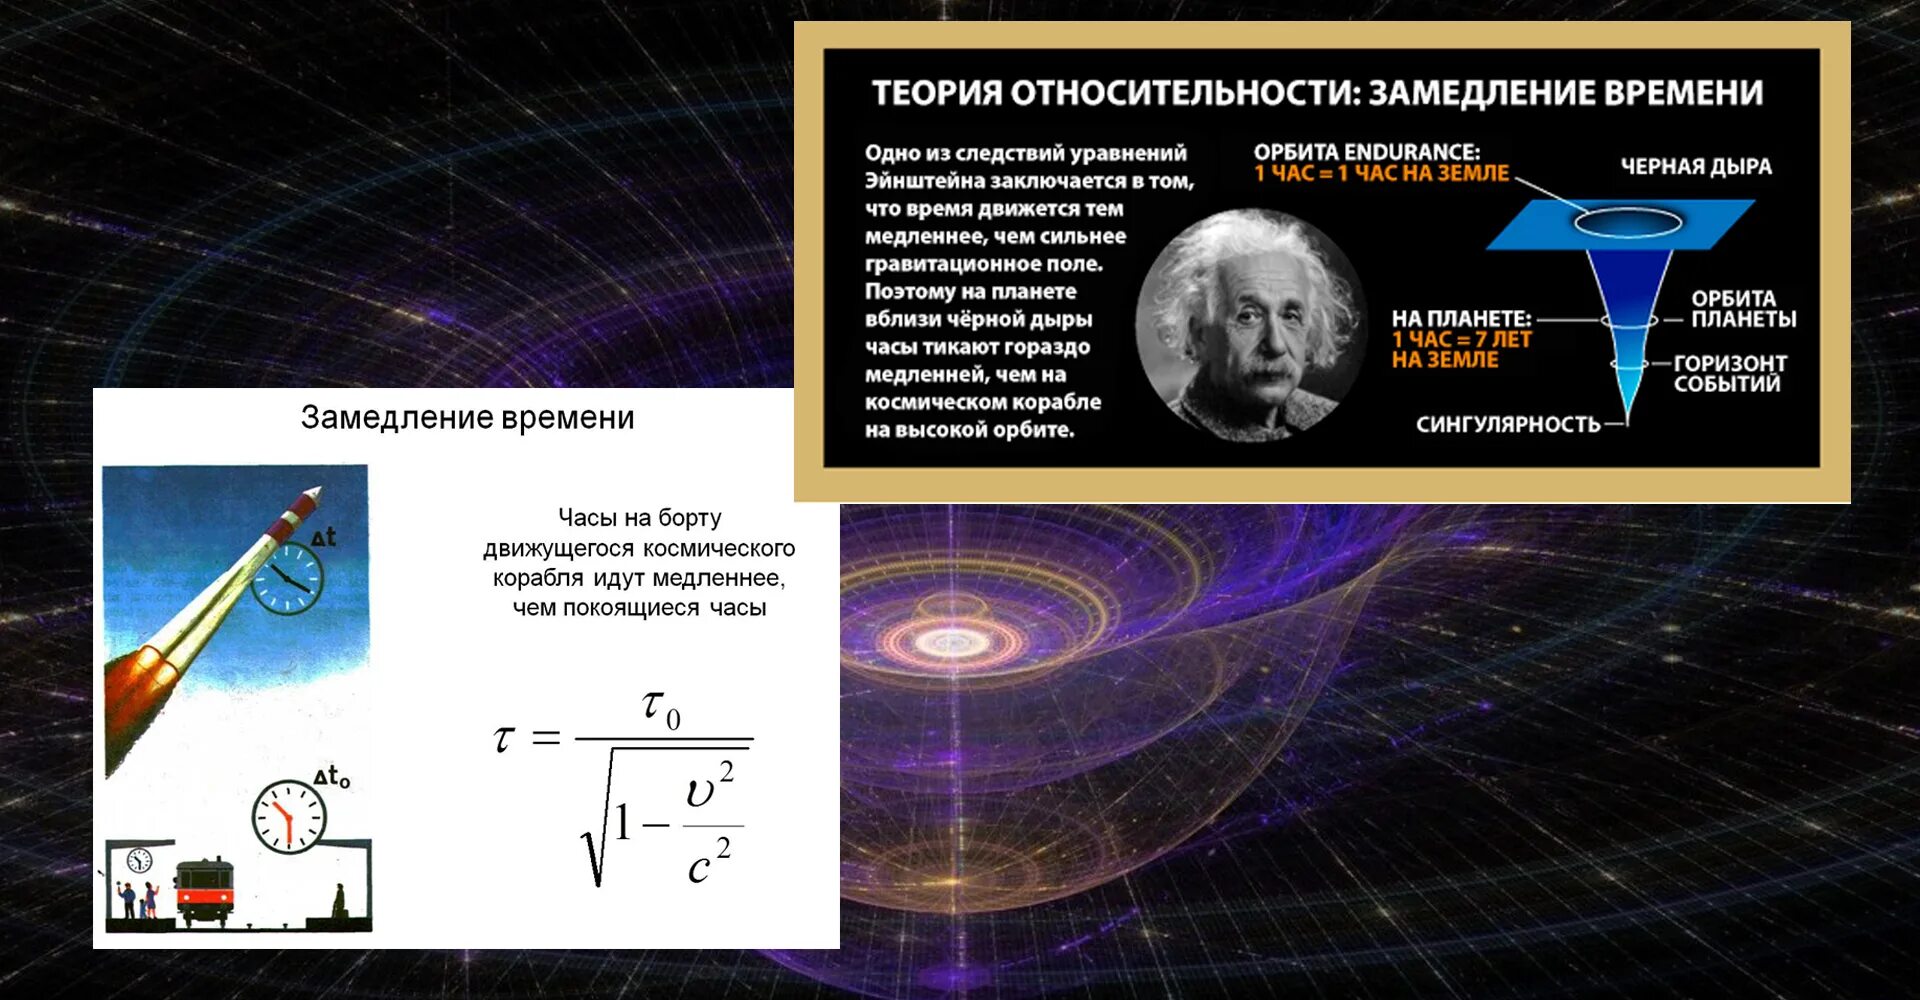 Гипотеза относительности. Теория относительности Эйнштейна. Общая теория относительности Ньютона. Теория относительности Эйнштейна пространство. Замедление времени в специальной теории относительности.